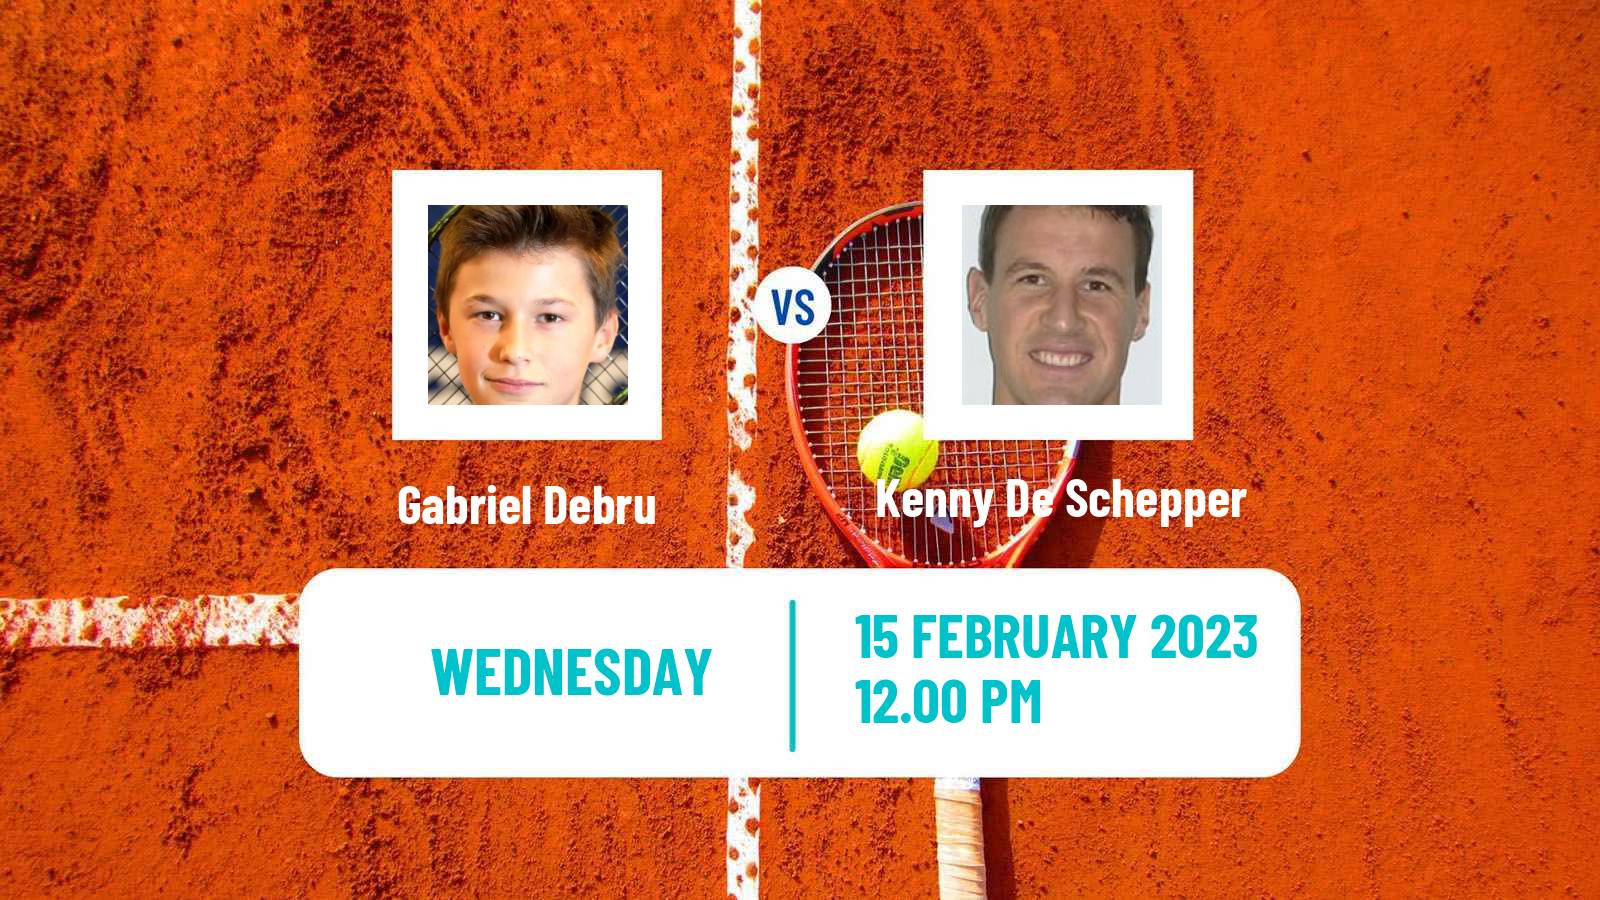 Tennis ATP Challenger Gabriel Debru - Kenny De Schepper